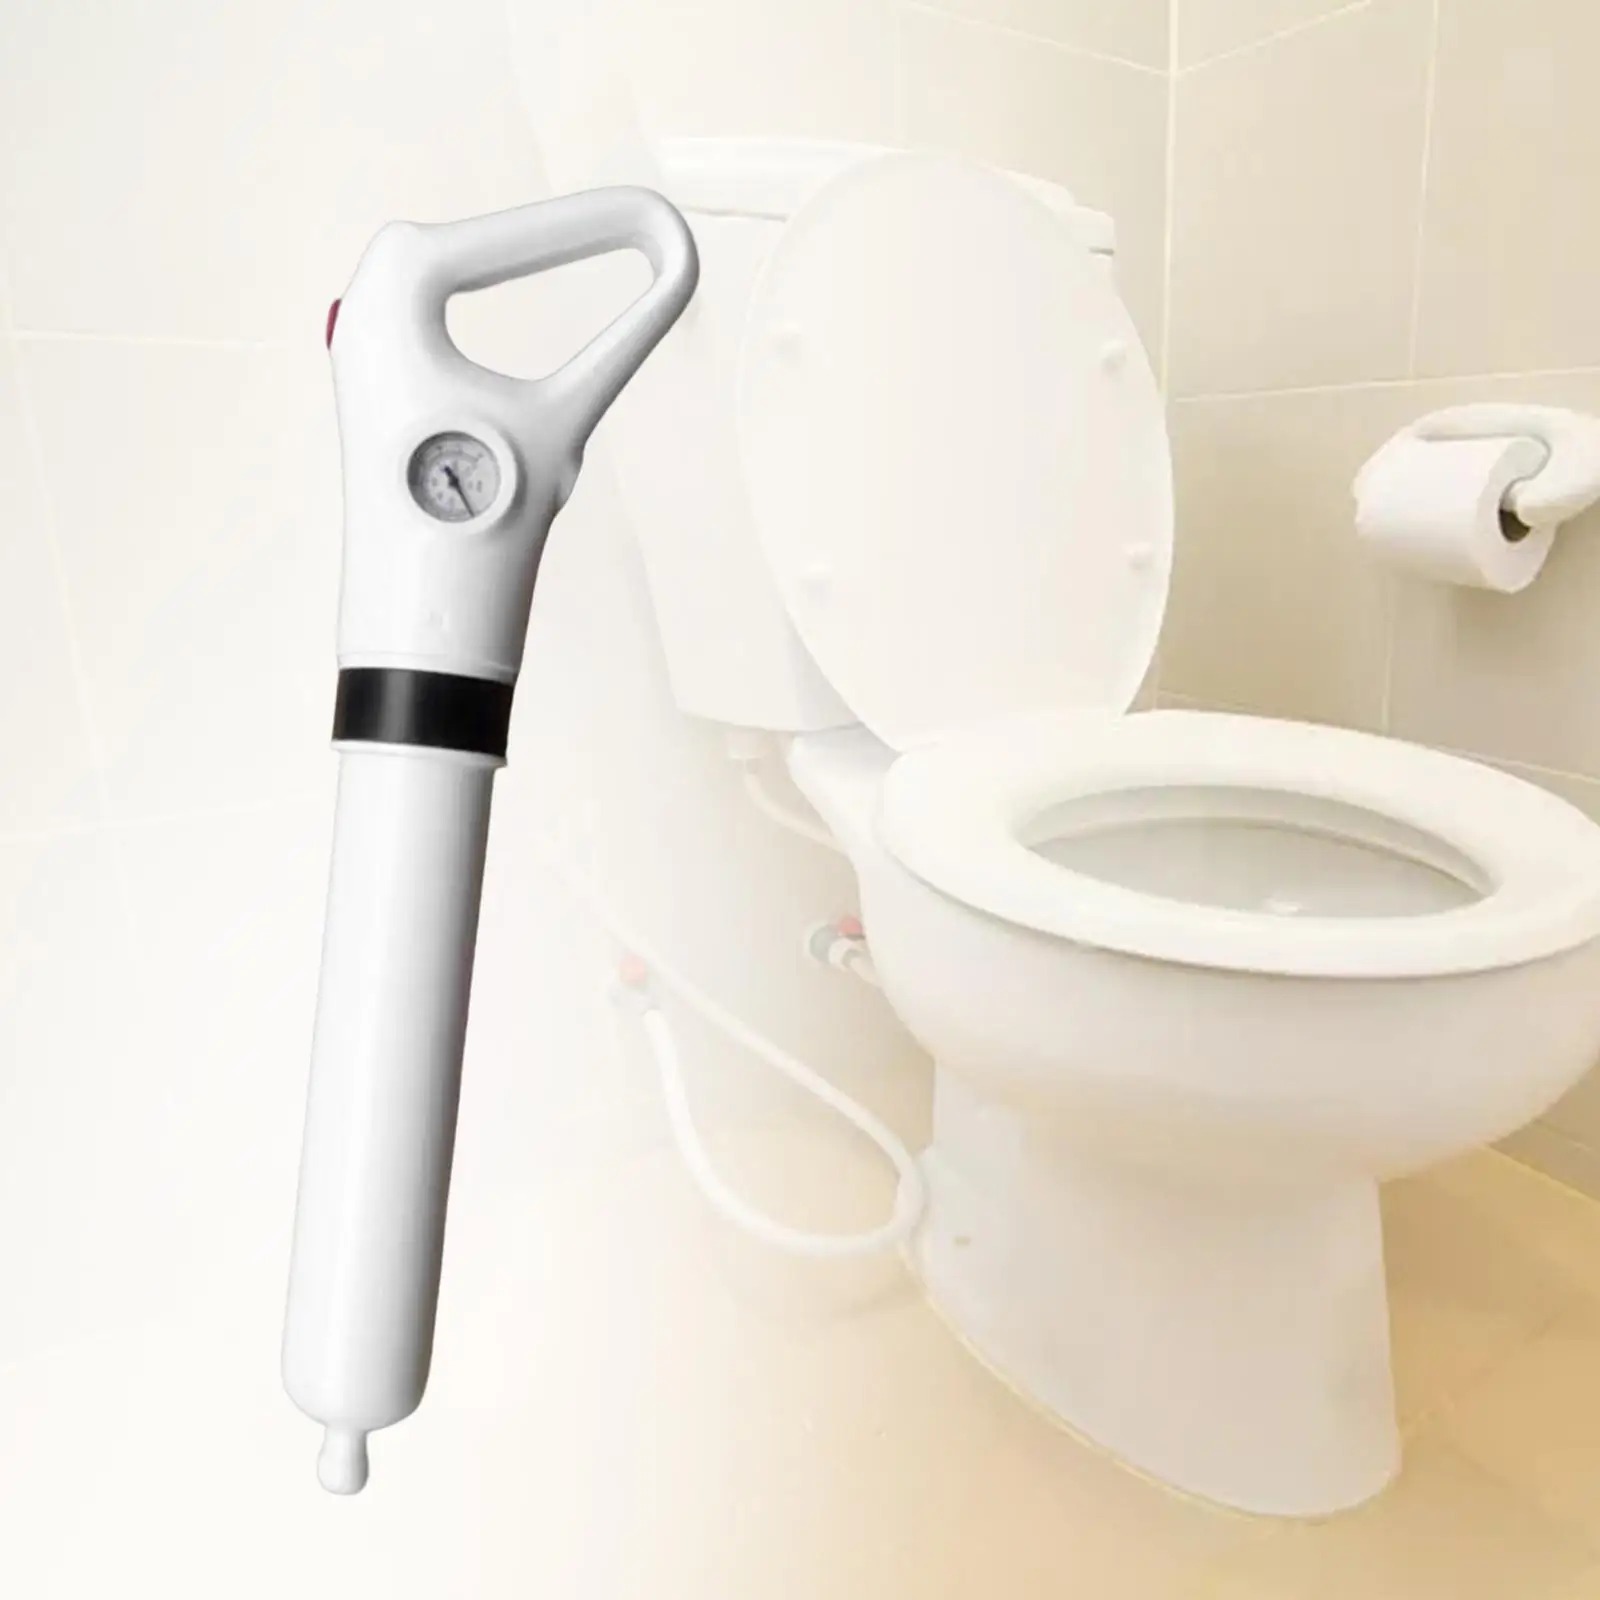 Toilet Plunger Multipurpose Sewer Dredge Tool for Floor Drains Sinks Kitchen